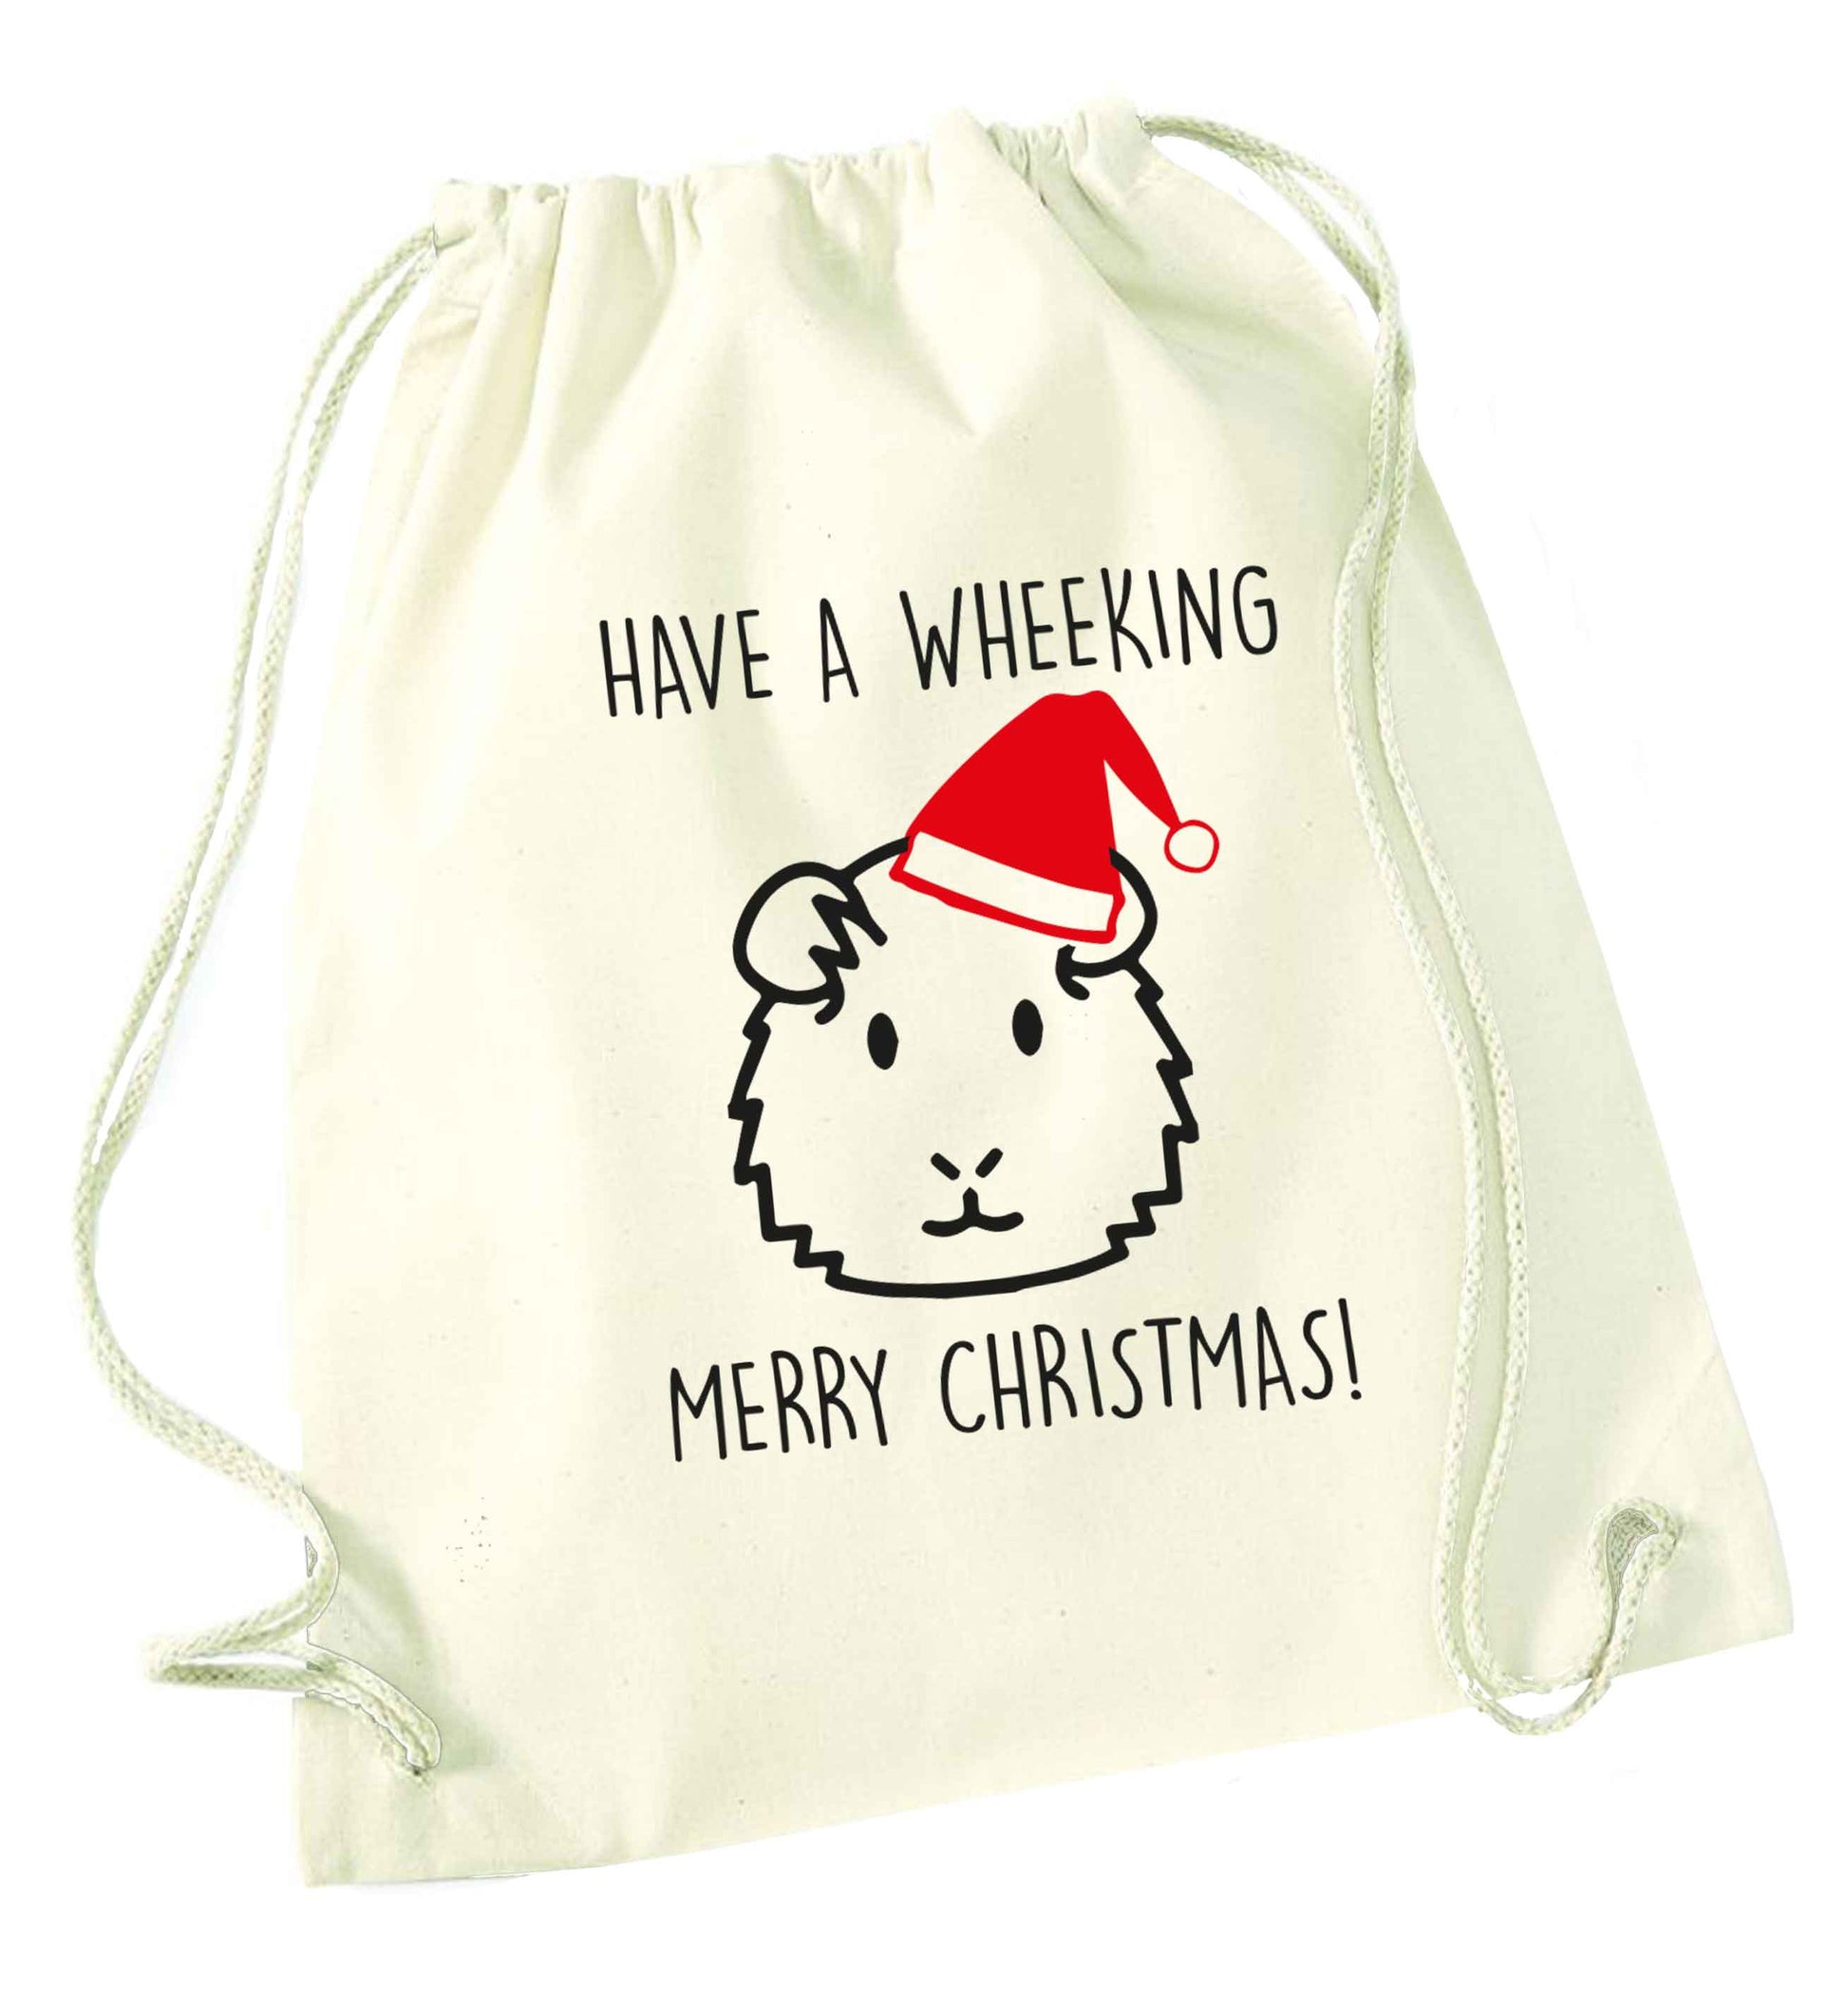 Have a wheeking merry Christmas natural drawstring bag